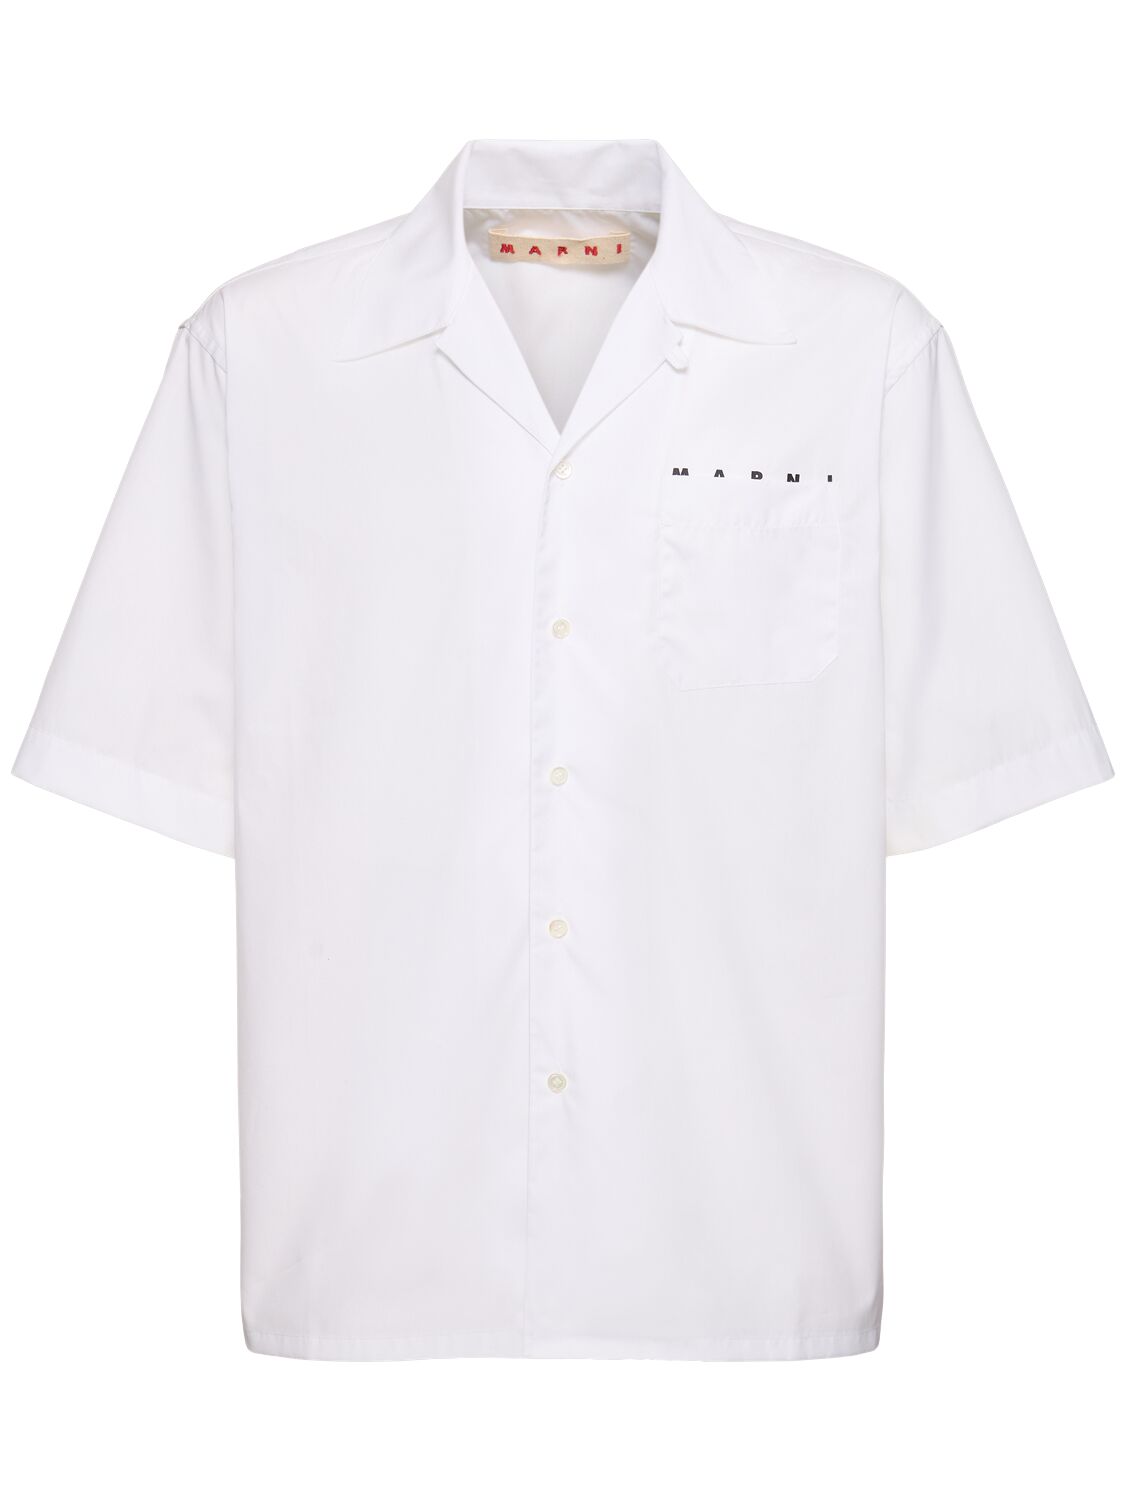 Marni Logo Cotton Poplin Boxy S/s Shirt In White